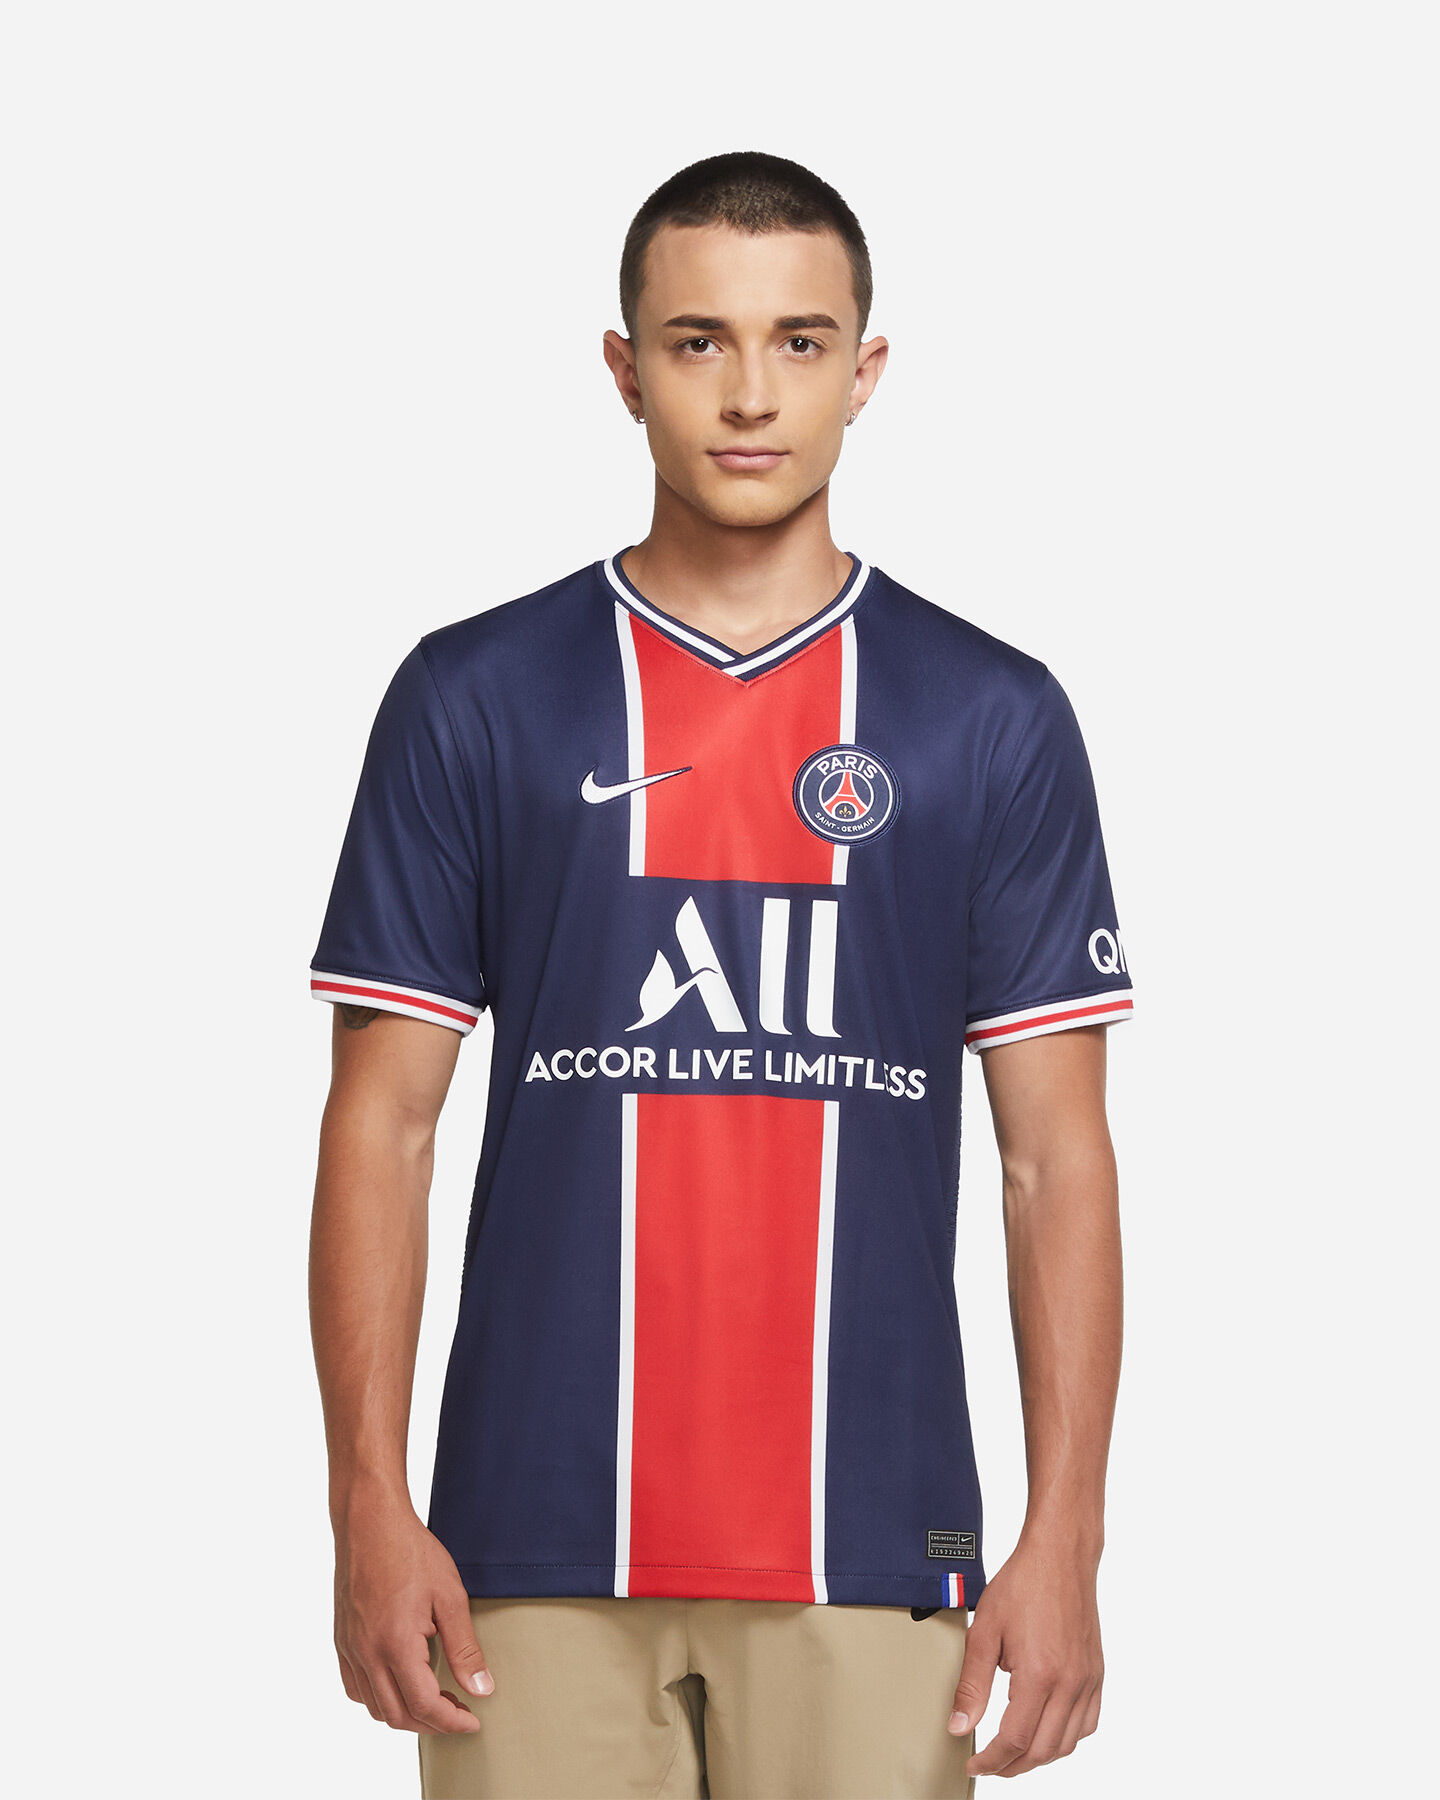 Maglietta PSG collezione ufficiale taglia uomo Paris Saint Germain 